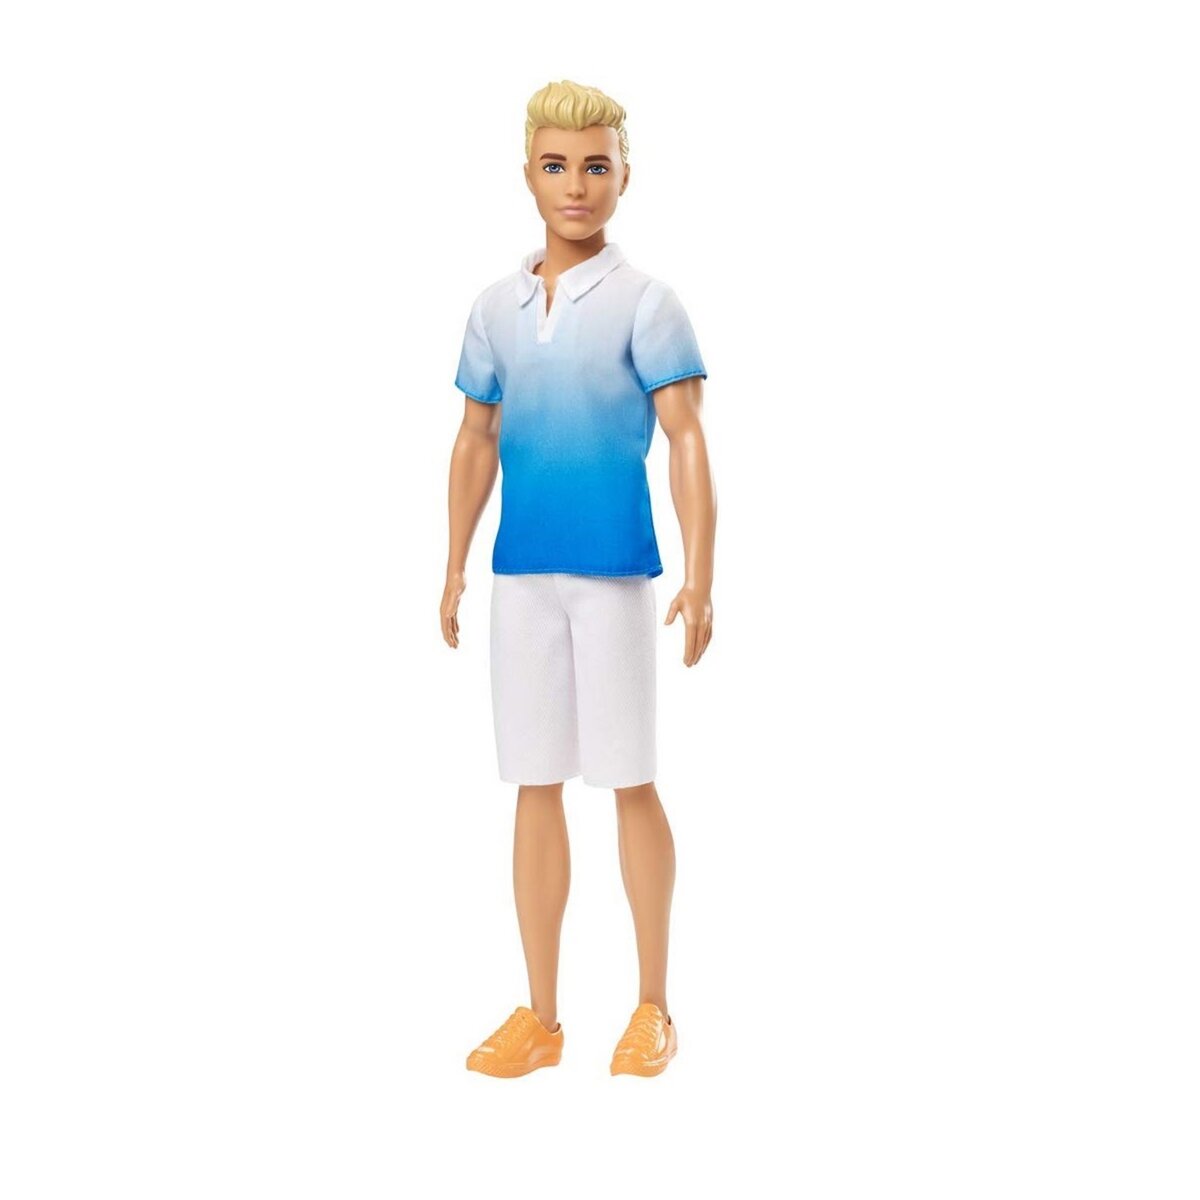 MATTEL Poupée Ken Fashionistas blond avec polo dégradé bleu et bermuda blanc - Barbie